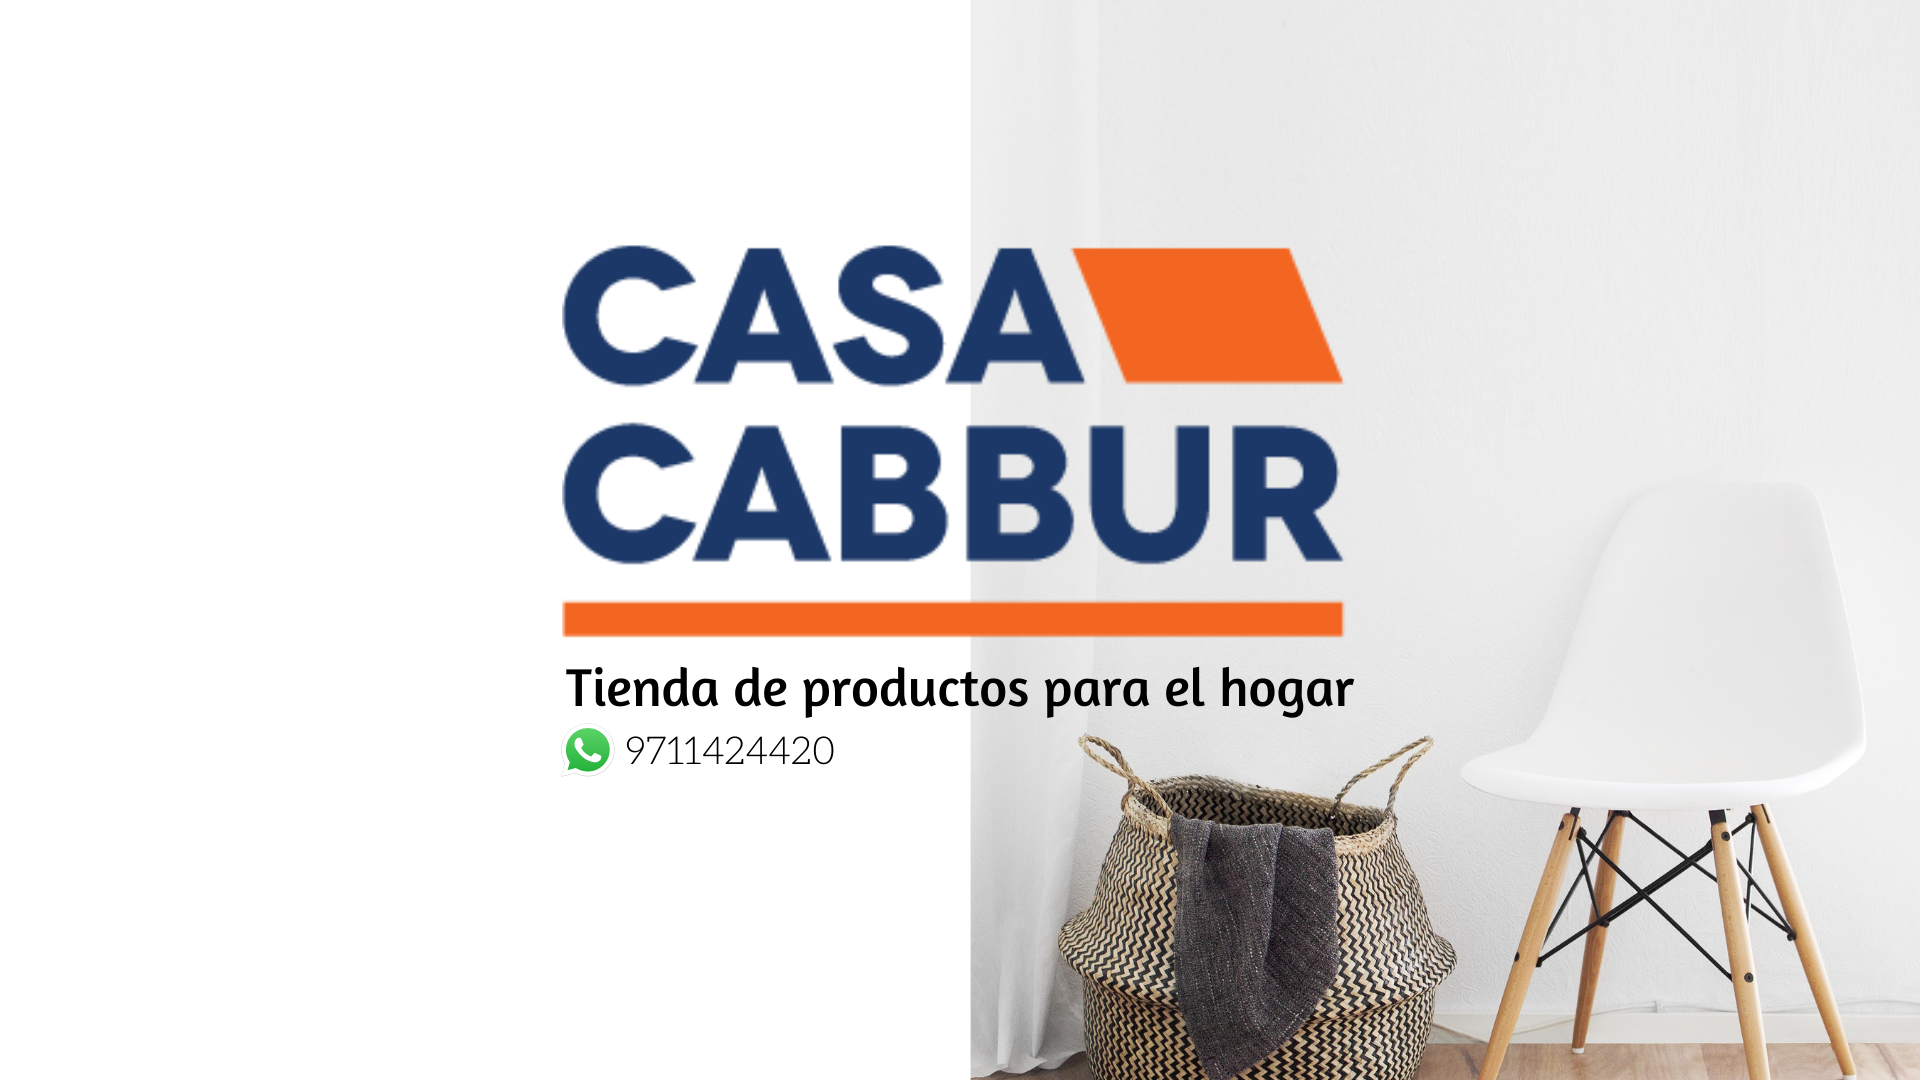 Foto de portada de Casa Cabbur.